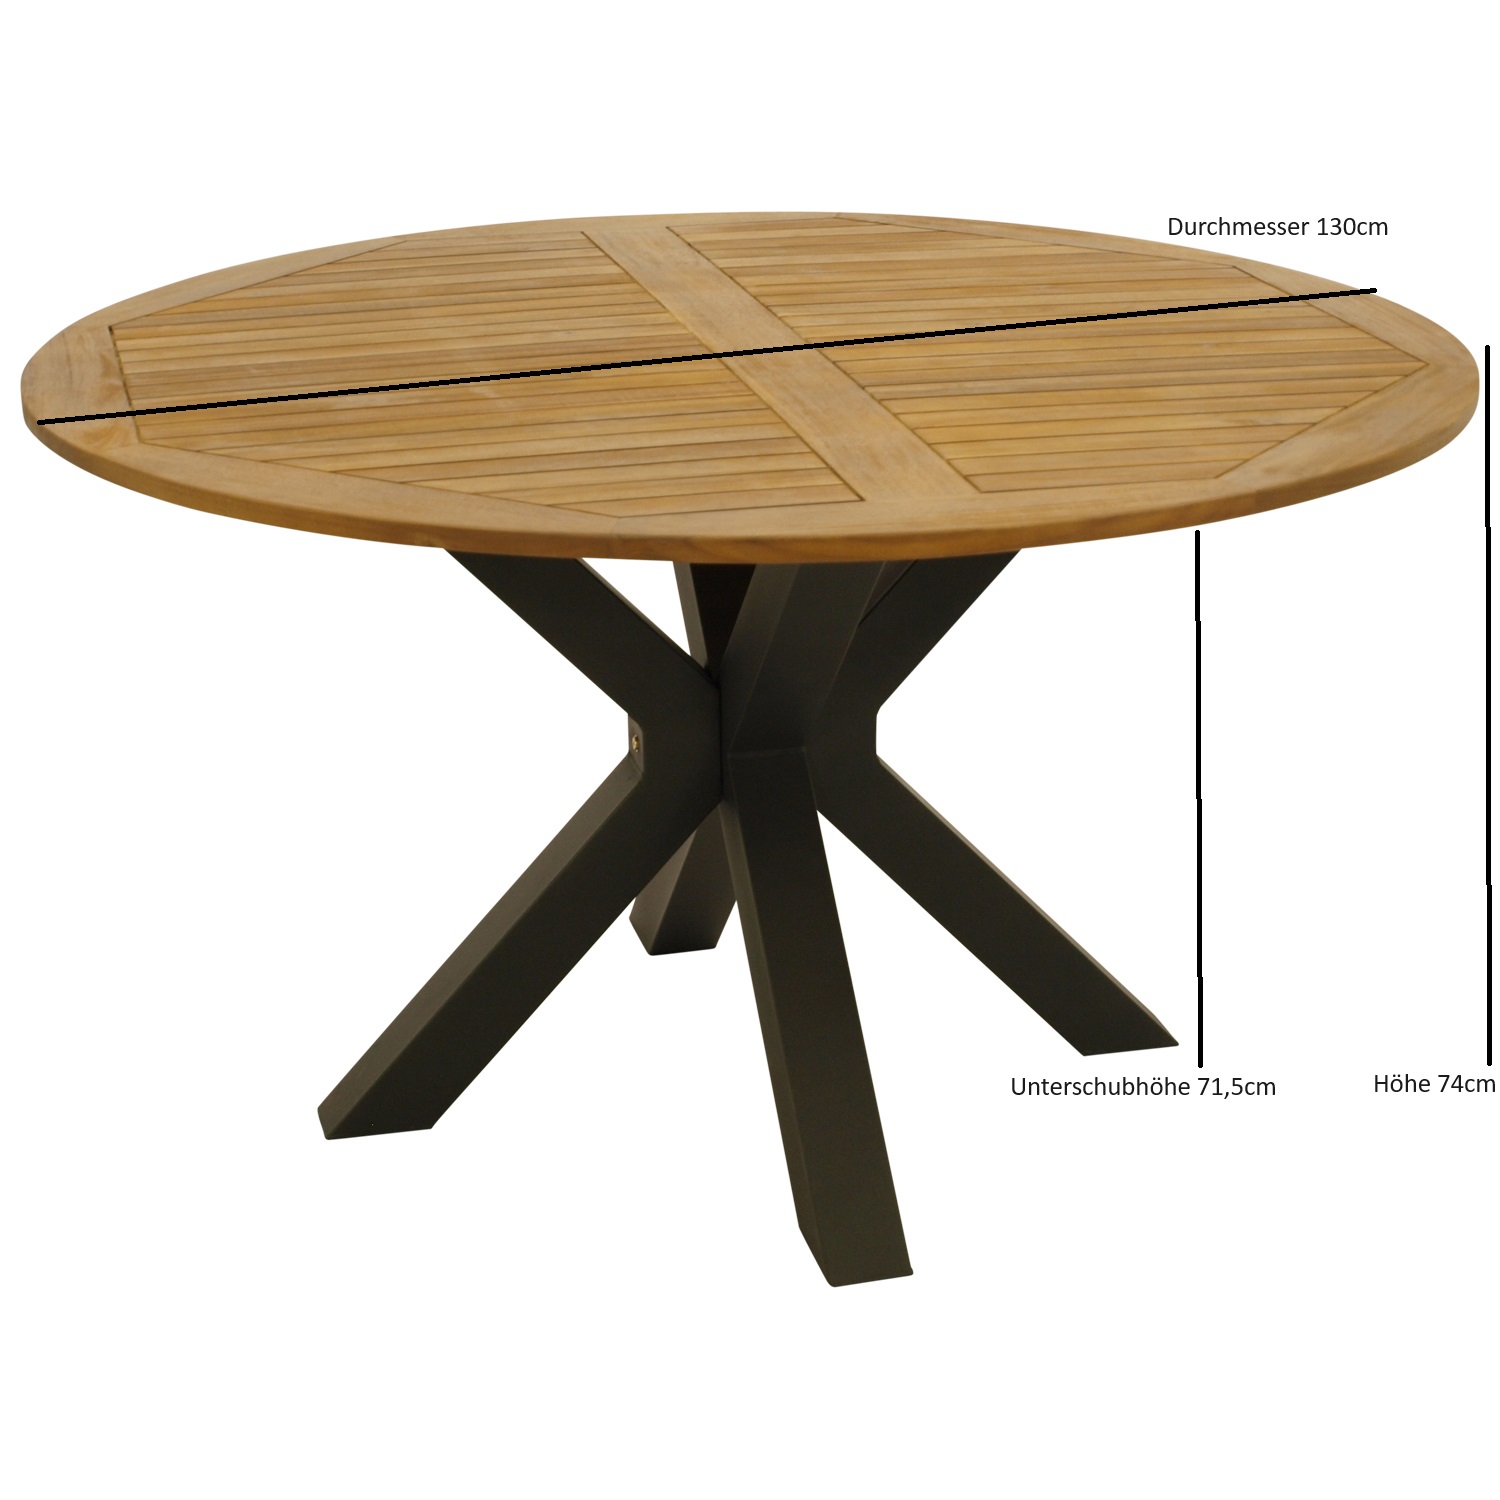 Tisch MADEIRA 130cm rund, Metall anthrazit + Akazie geölt, FSC®-zertifiziert